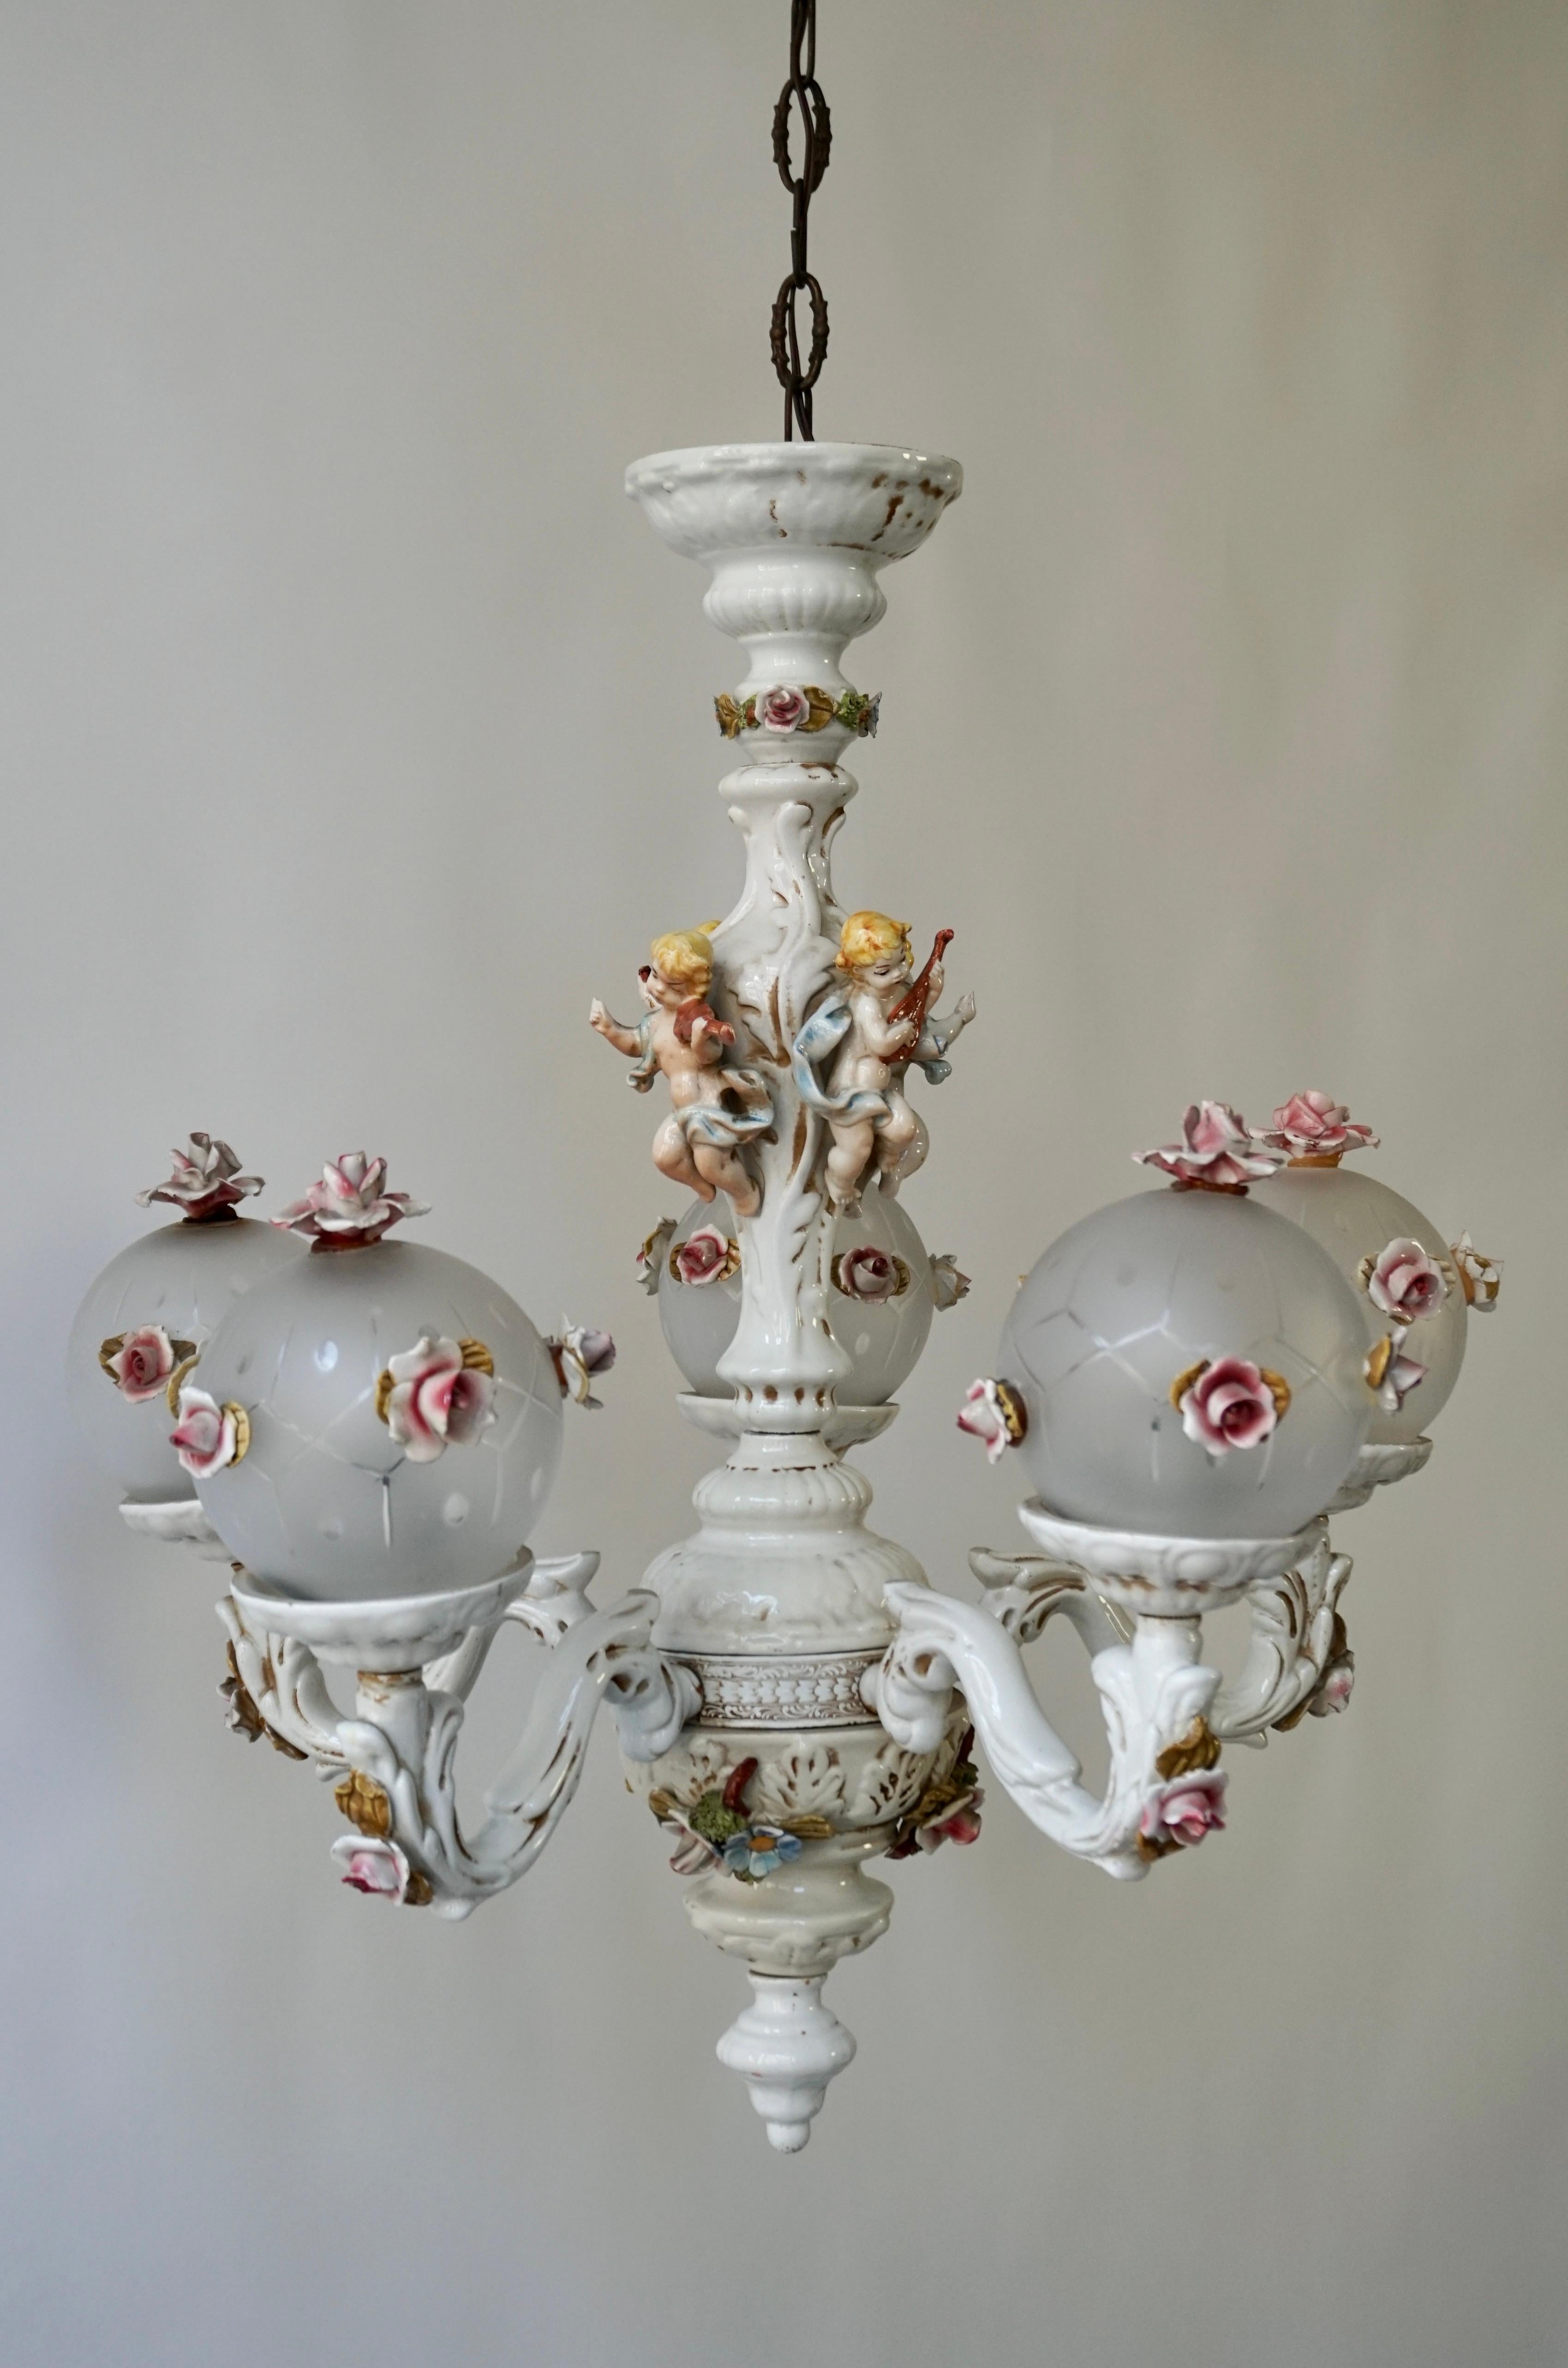 Wunderschöner italienischer Porzellankronleuchter mit exquisiten Blumenarrangements und fünf Glaskugeln.

Dieser prächtige Kronleuchter ist ein außergewöhnliches Beispiel für den Stil des Rokoko: Er hat einen balusterförmigen Stiel und ist mit